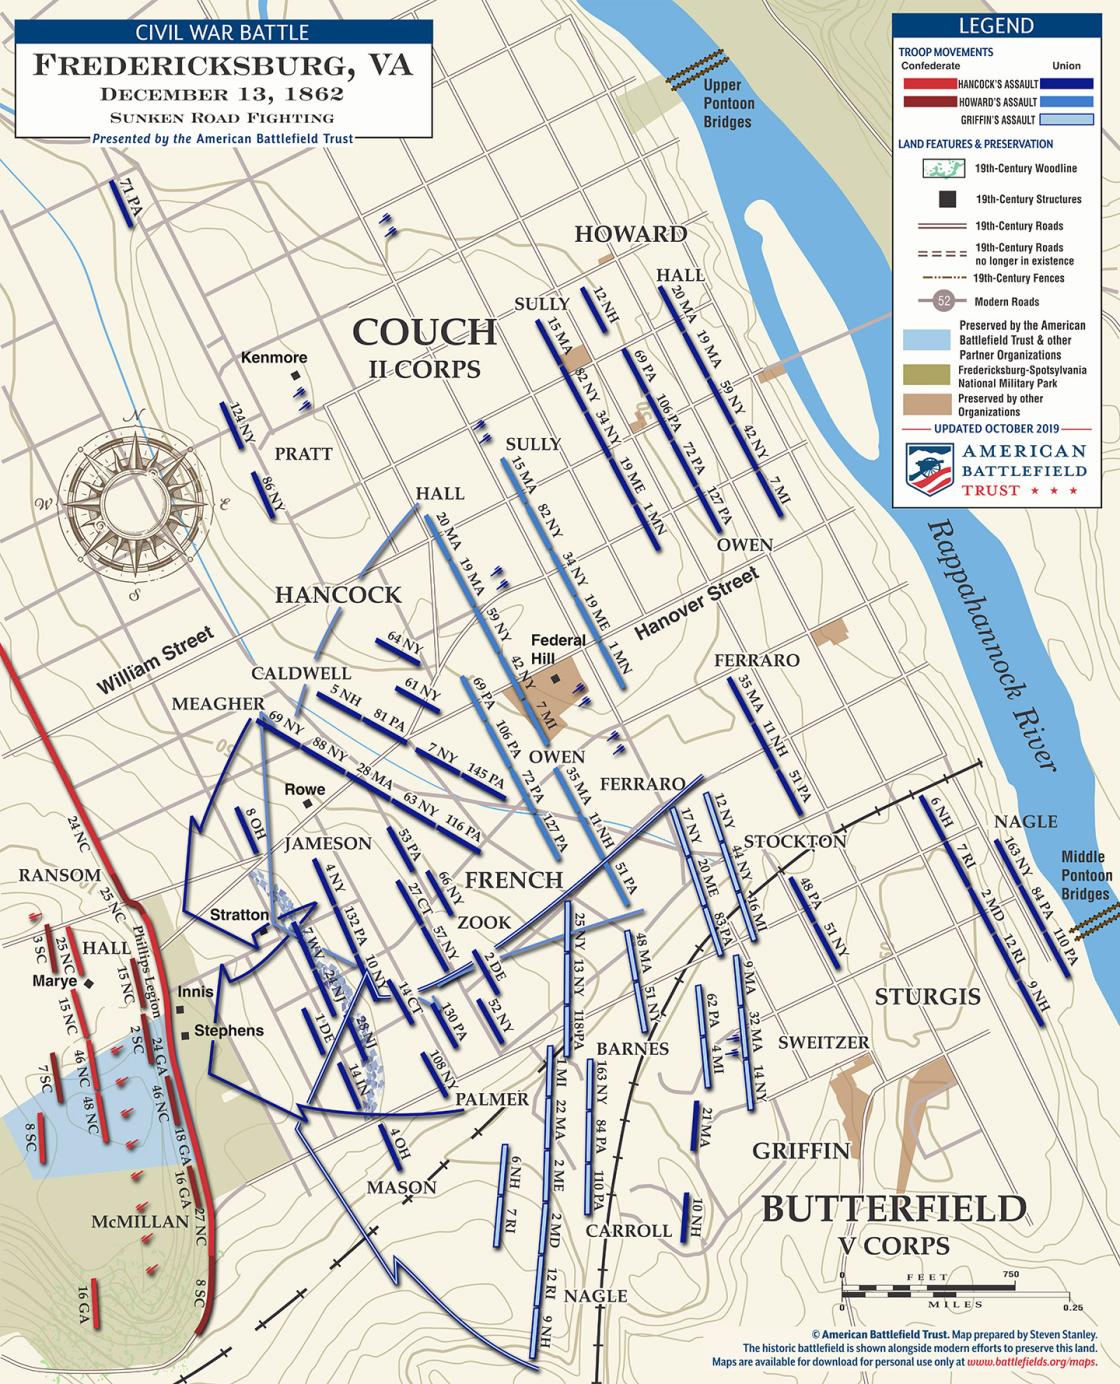 Fredericksburg | Sunken Road Fighting | Dec 13, 1862 (October 2019)